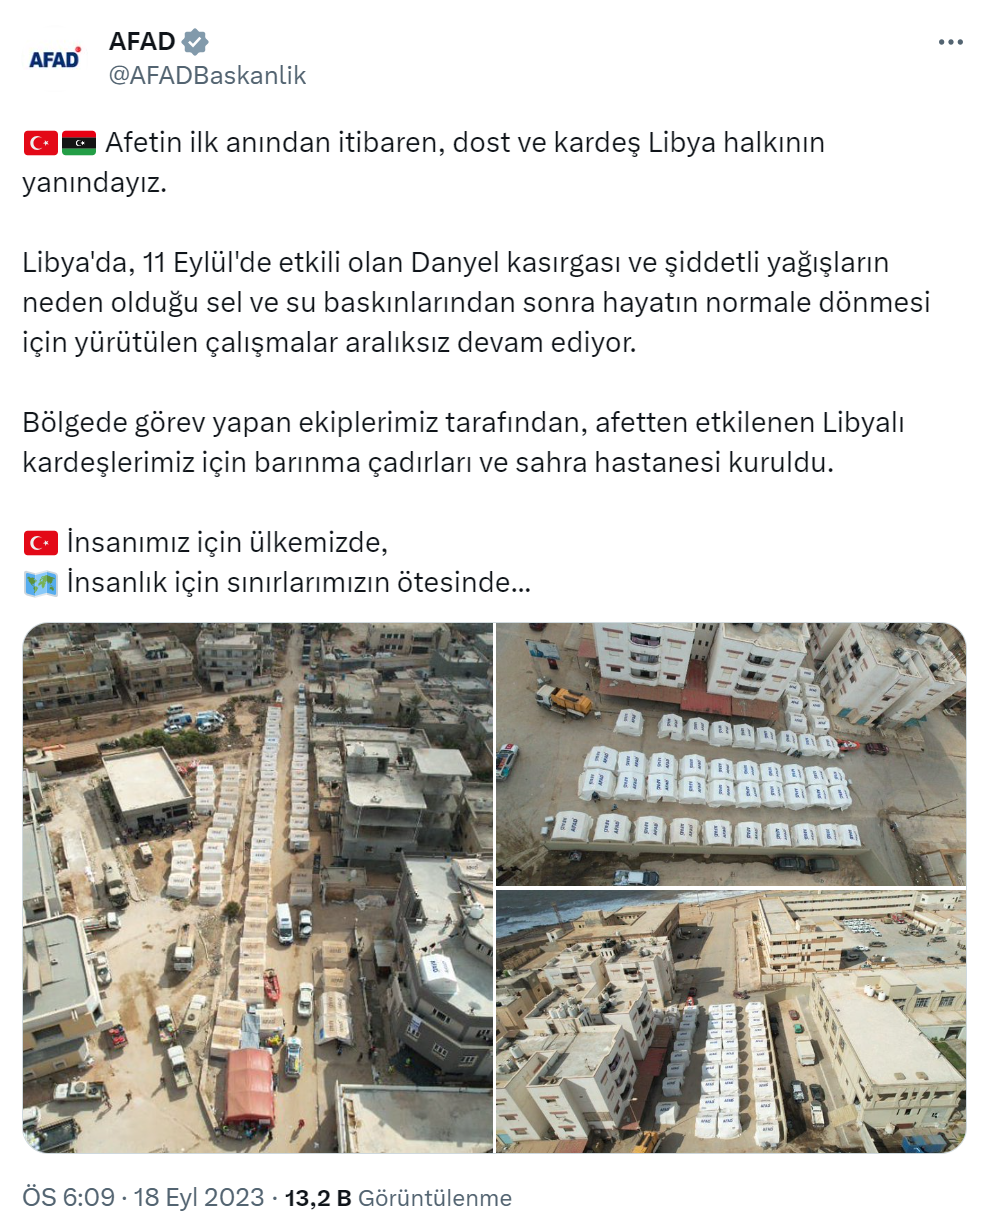 Türk ekipler, Libya’da barınma çadırları ve sahra hastanesi kurdu